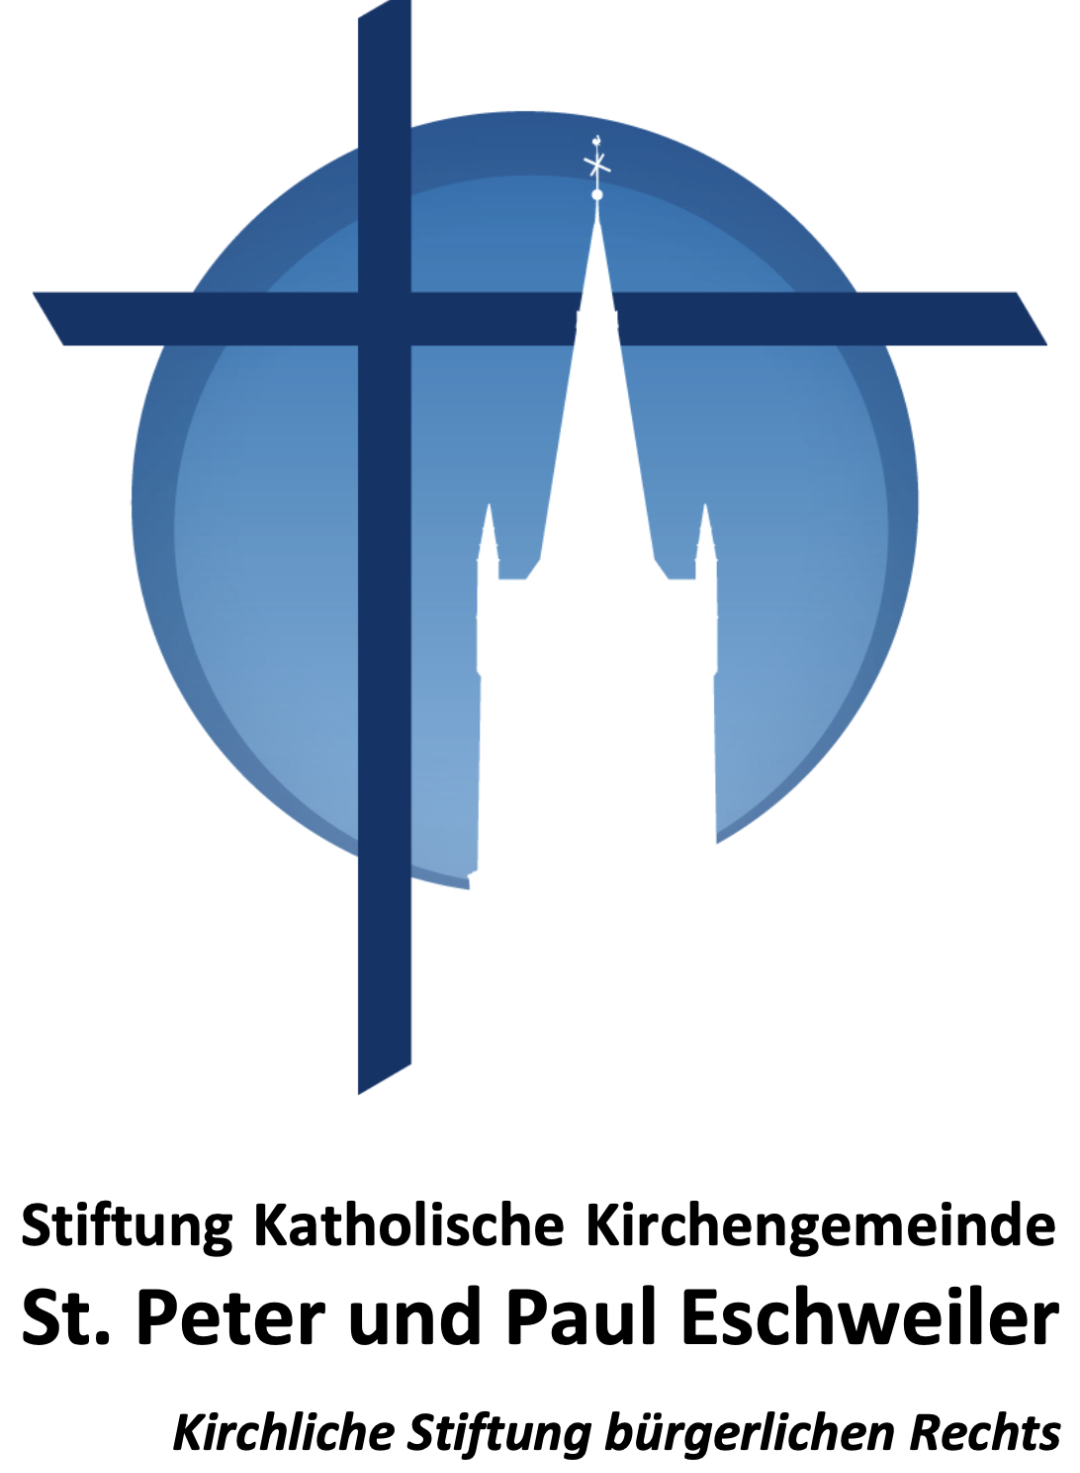 Stiftung Katholische Kirchengemeinde St. Peter und Paul Eschweiler (c) St. Peter und Paul